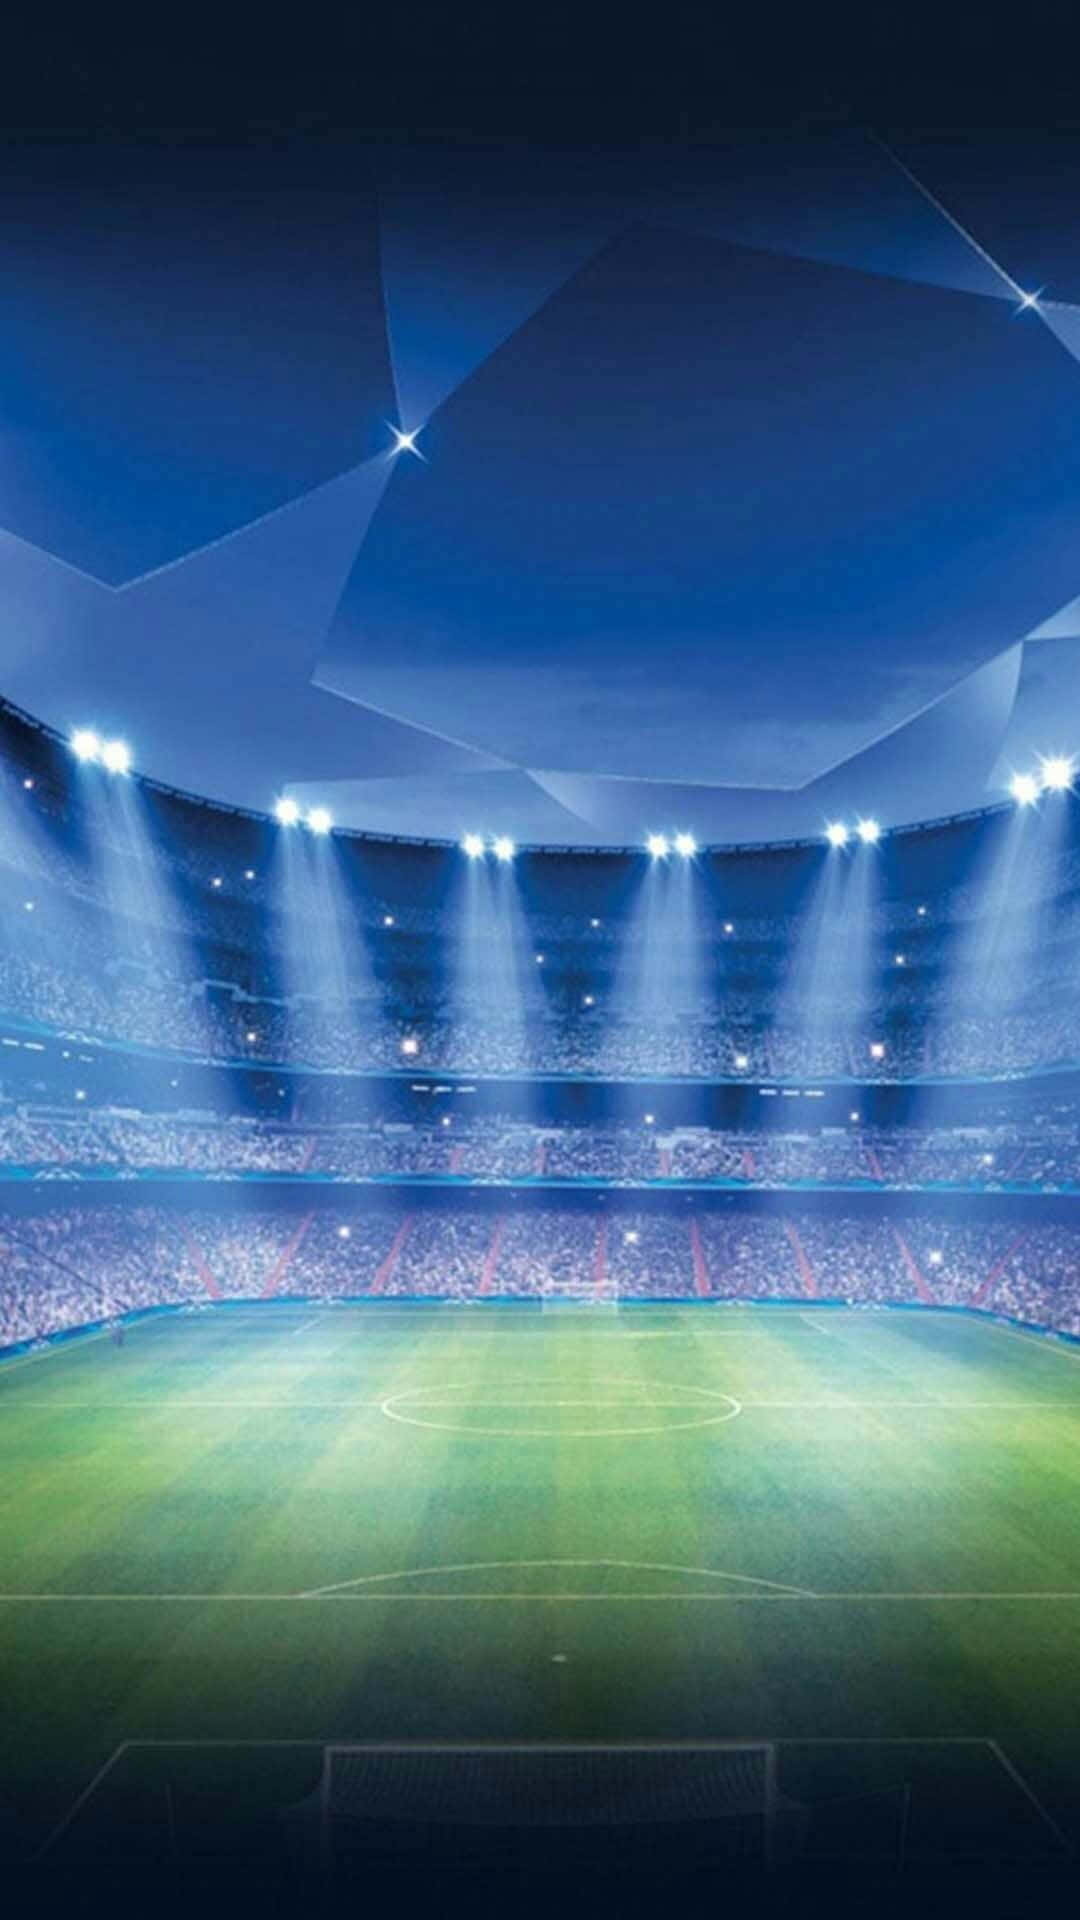 Enunderbar Bakgrundsbild För Fotbollsstadion.